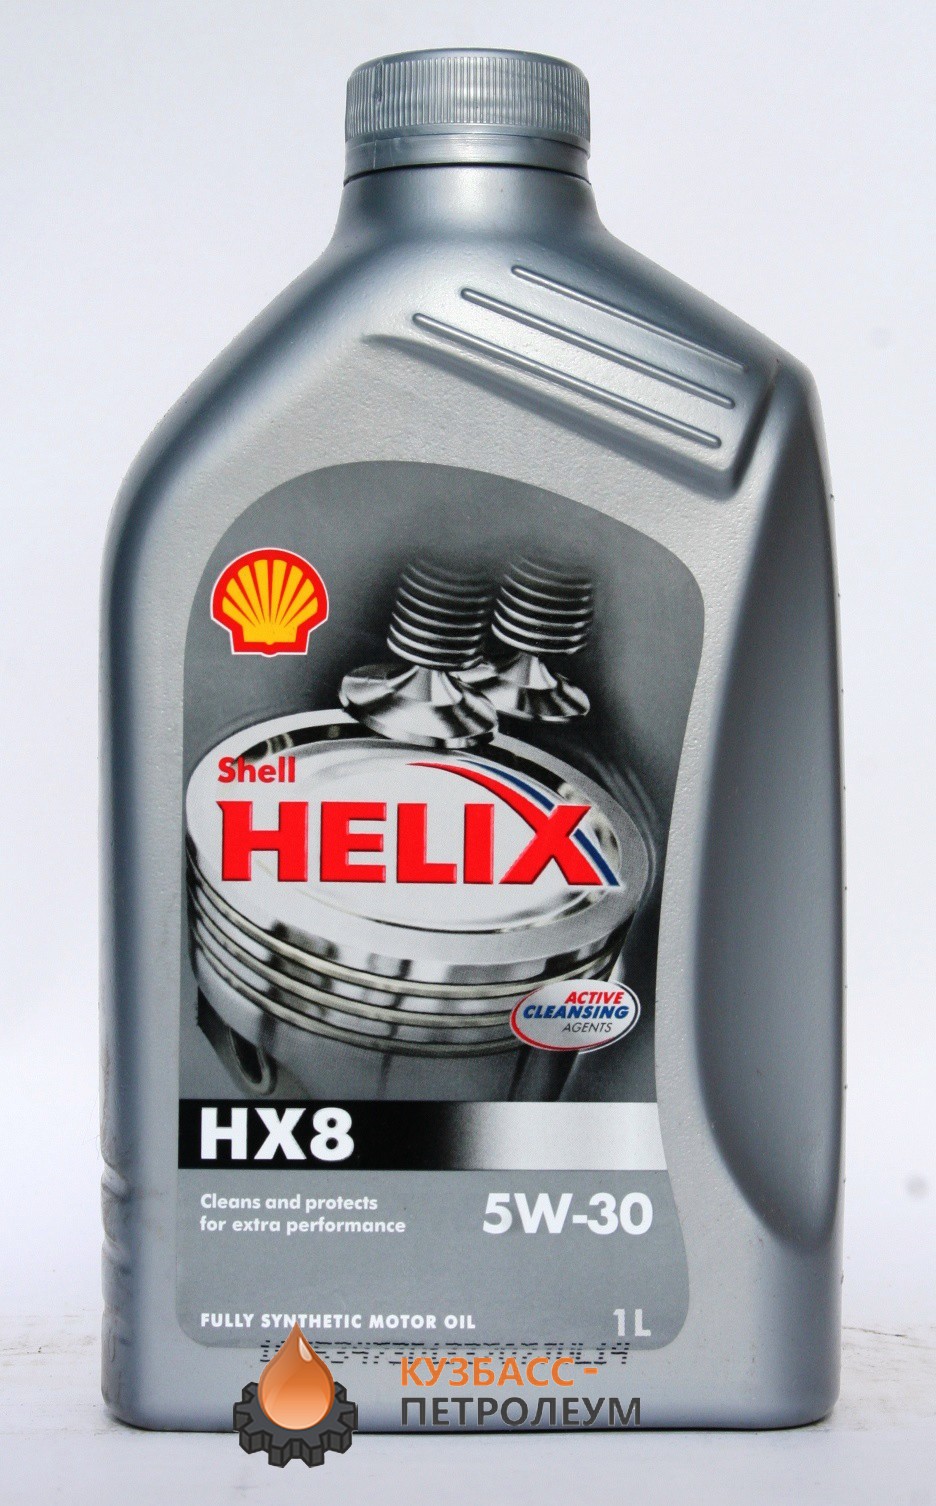 Масло helix hx8 5w 30. Helix hx8 5w-30 syn. Shell hx8 5w30 1л. Shell Helix hx8 syn 5w-30 a3 b4, SN CF масло моторное синт. 1 Л артикул. Shell Helix hx8 допуски.